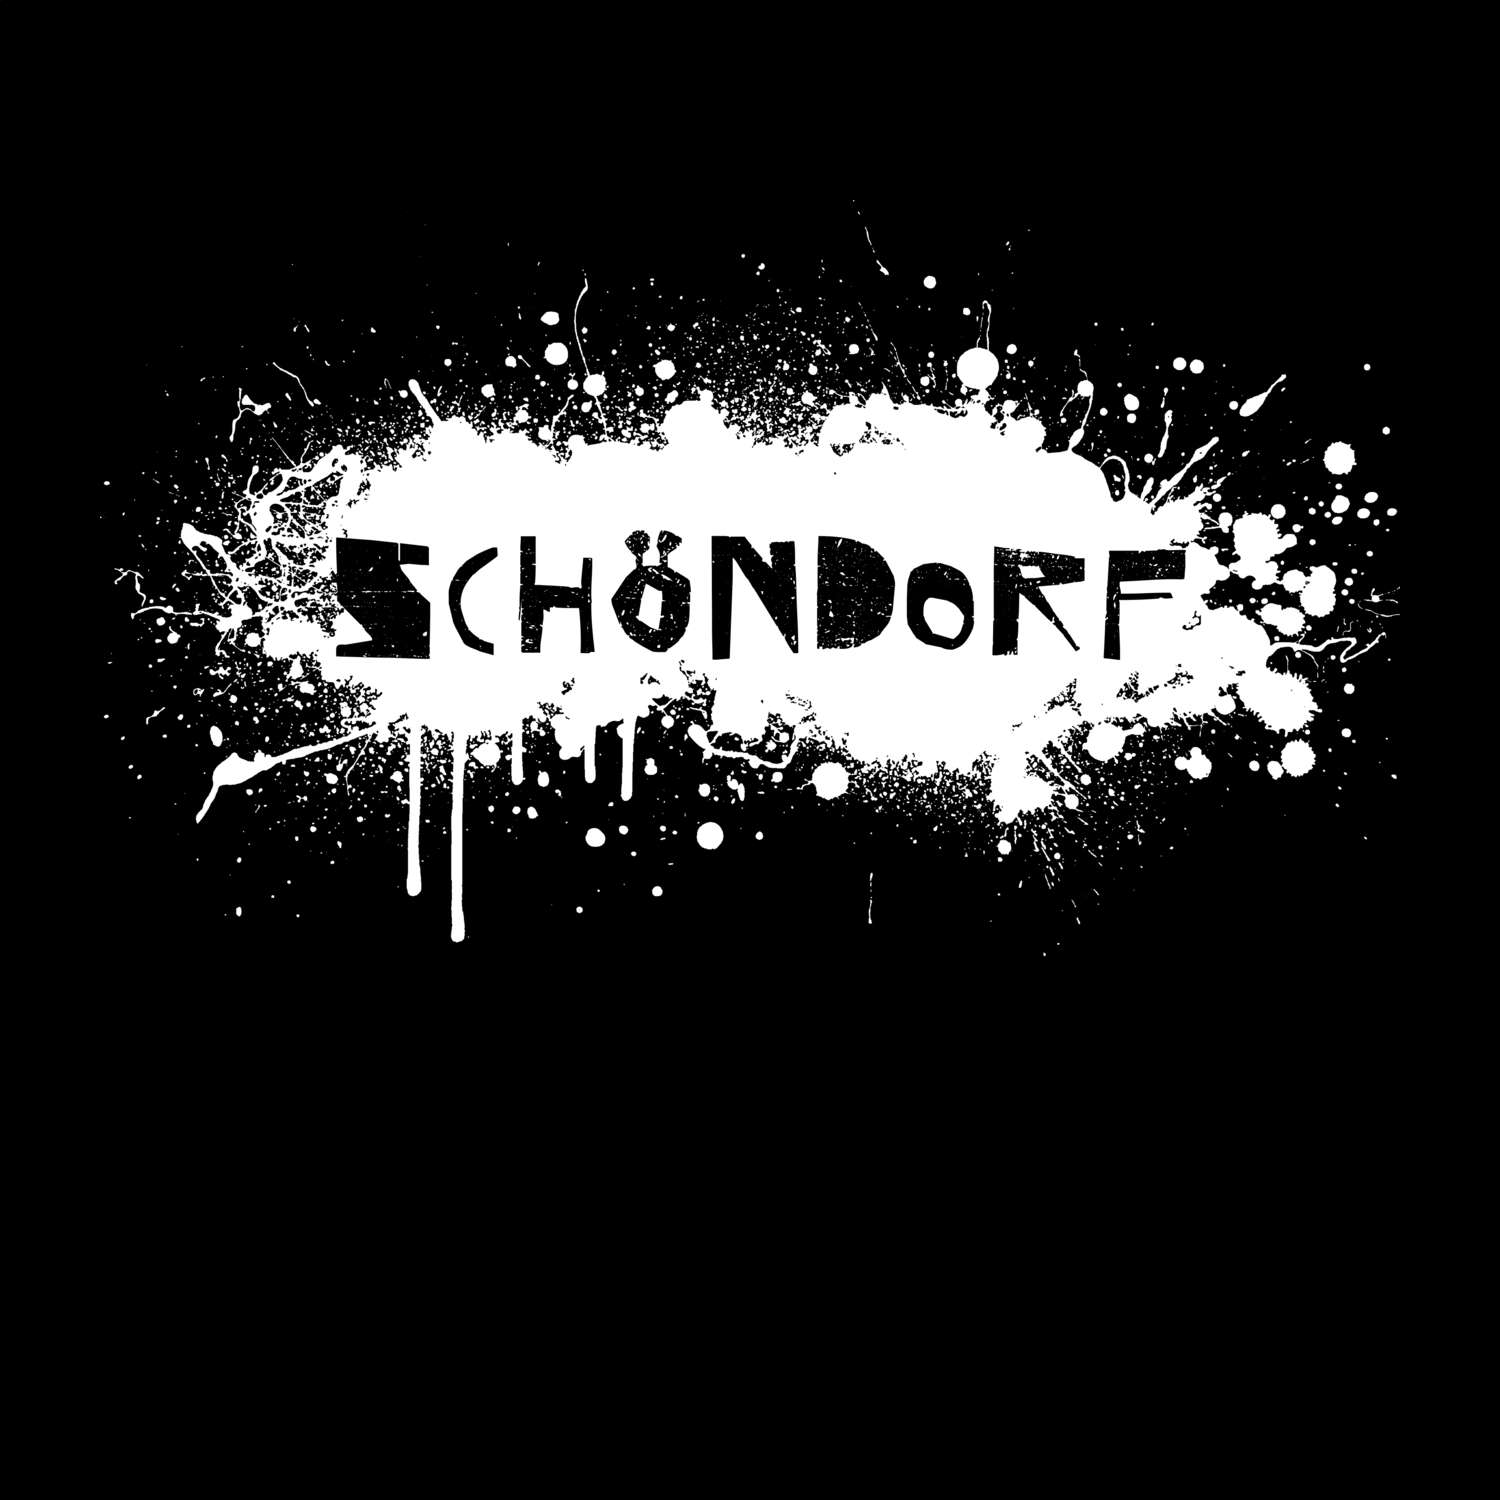 Schöndorf T-Shirt »Paint Splash Punk«